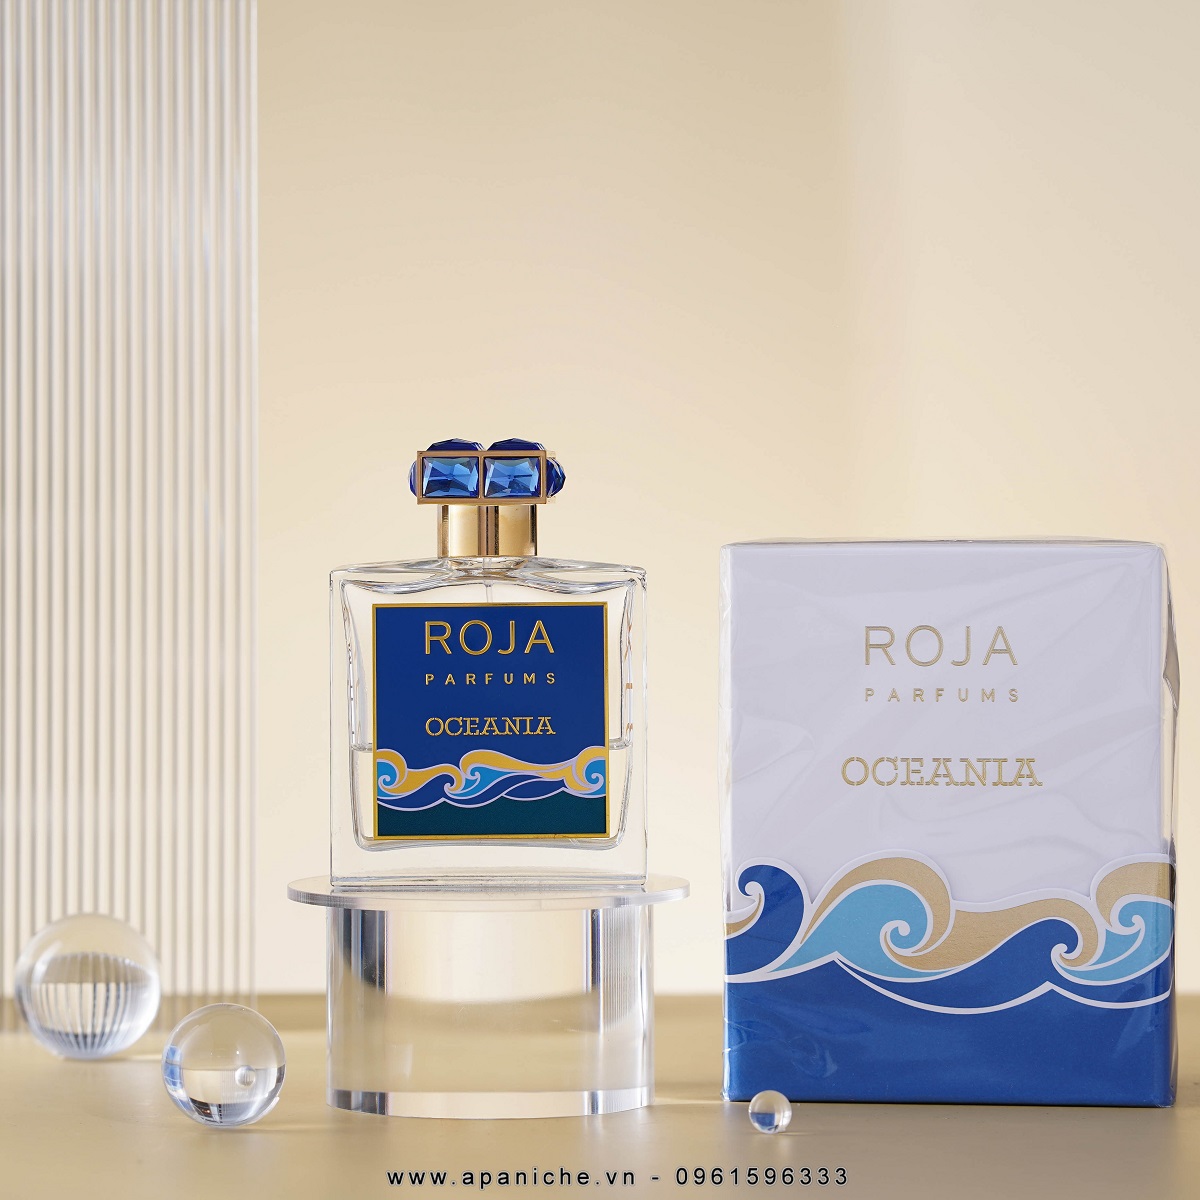 Roja-Parfums-Oceania-Parfum-gia-tot-nhat